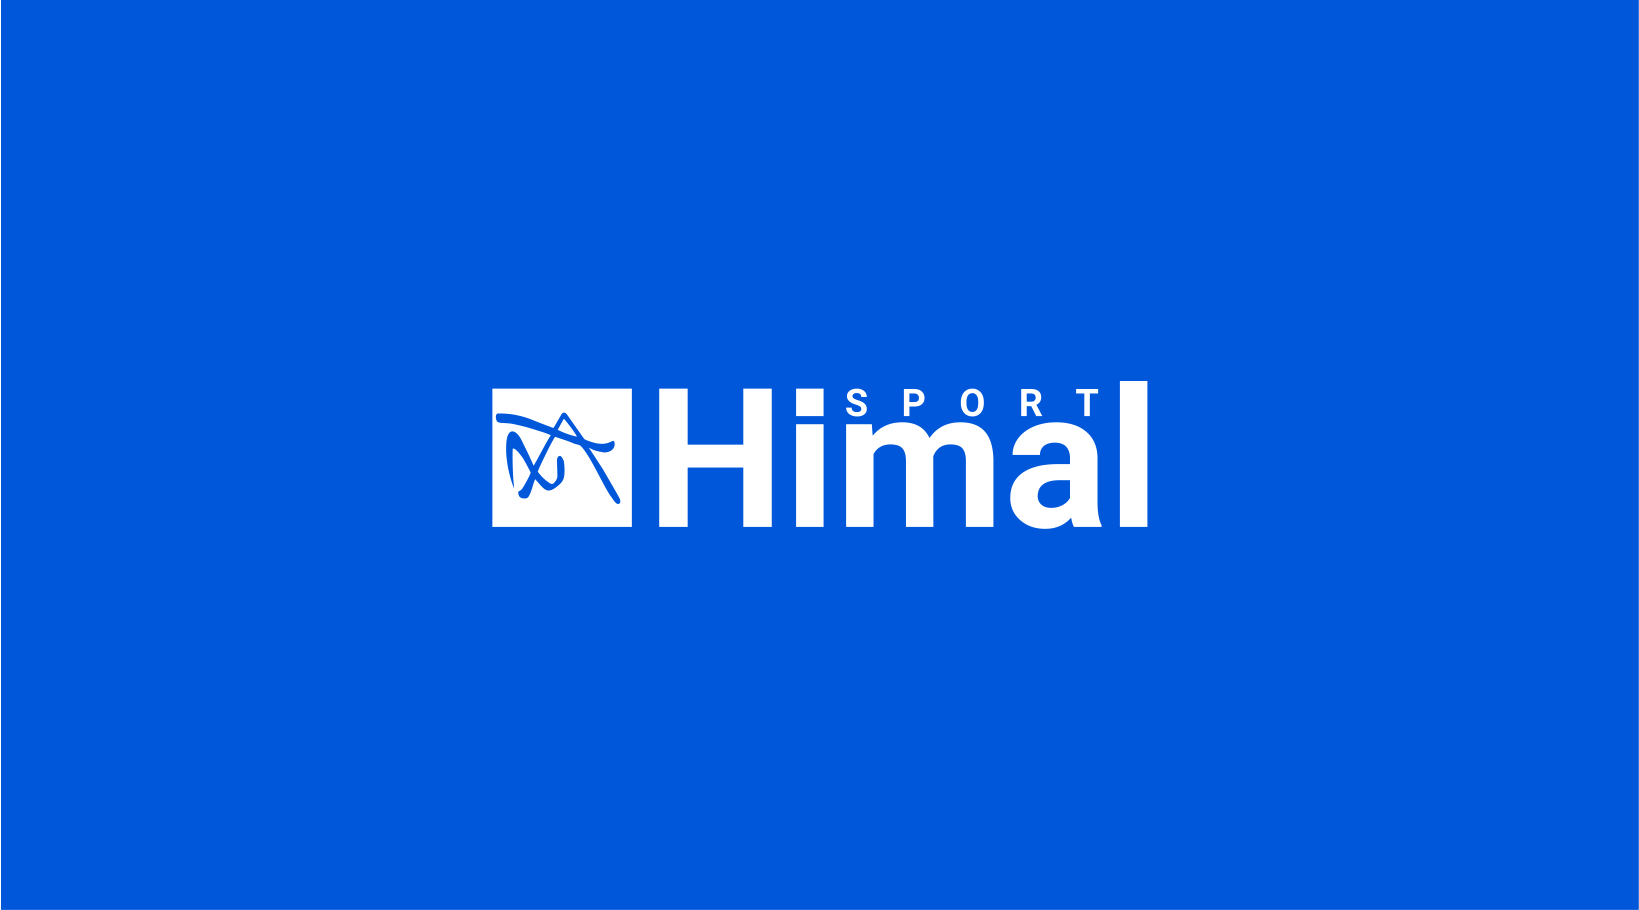 Himal Sport